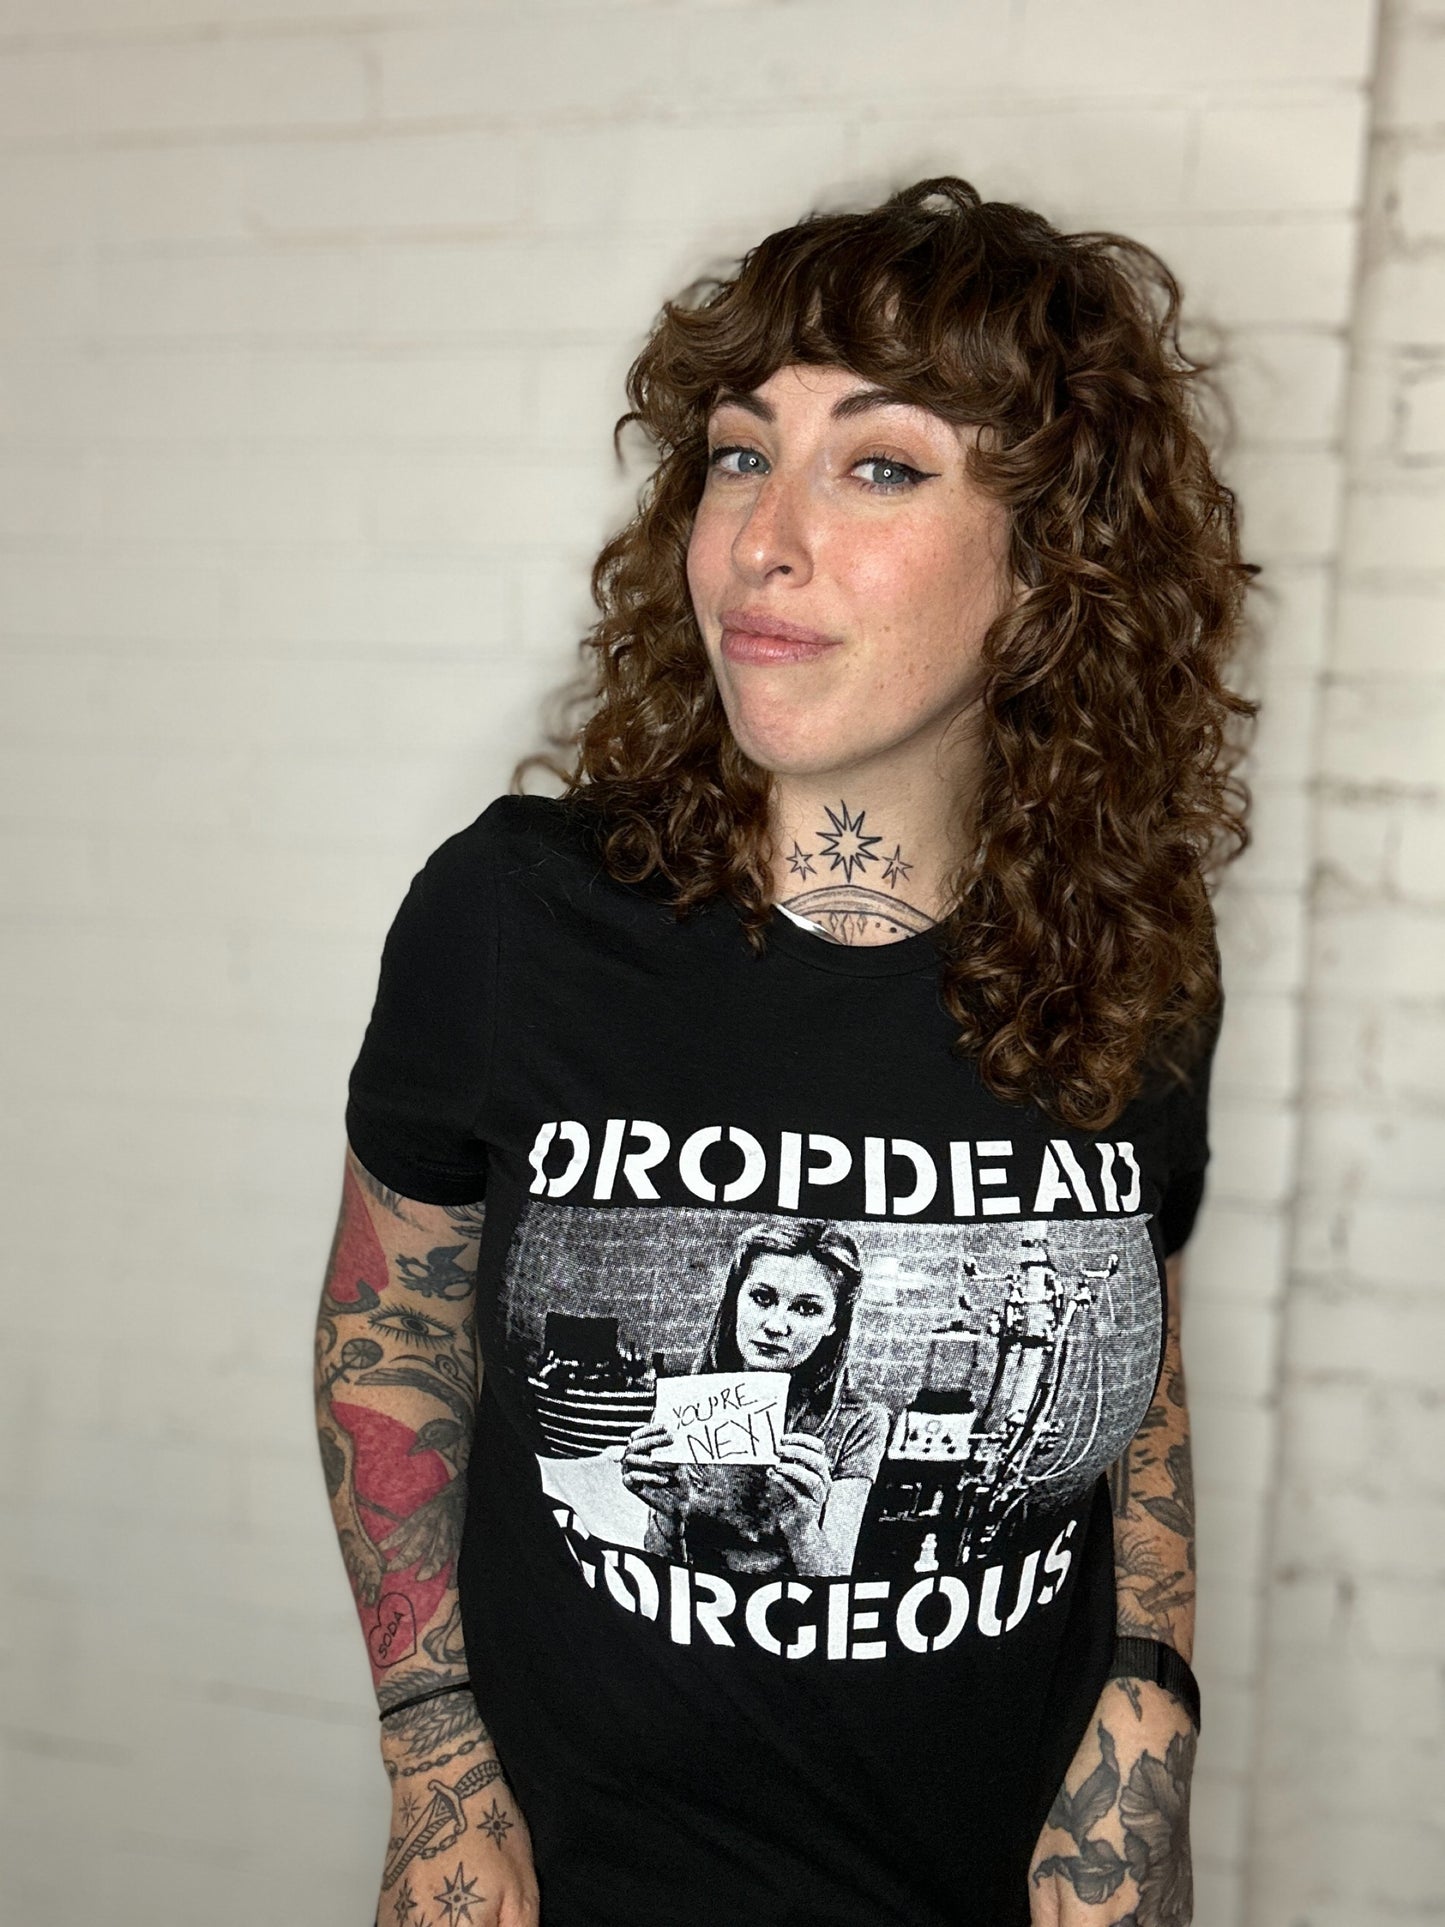 Dropdead Gorgeous Hardcore T-shirt